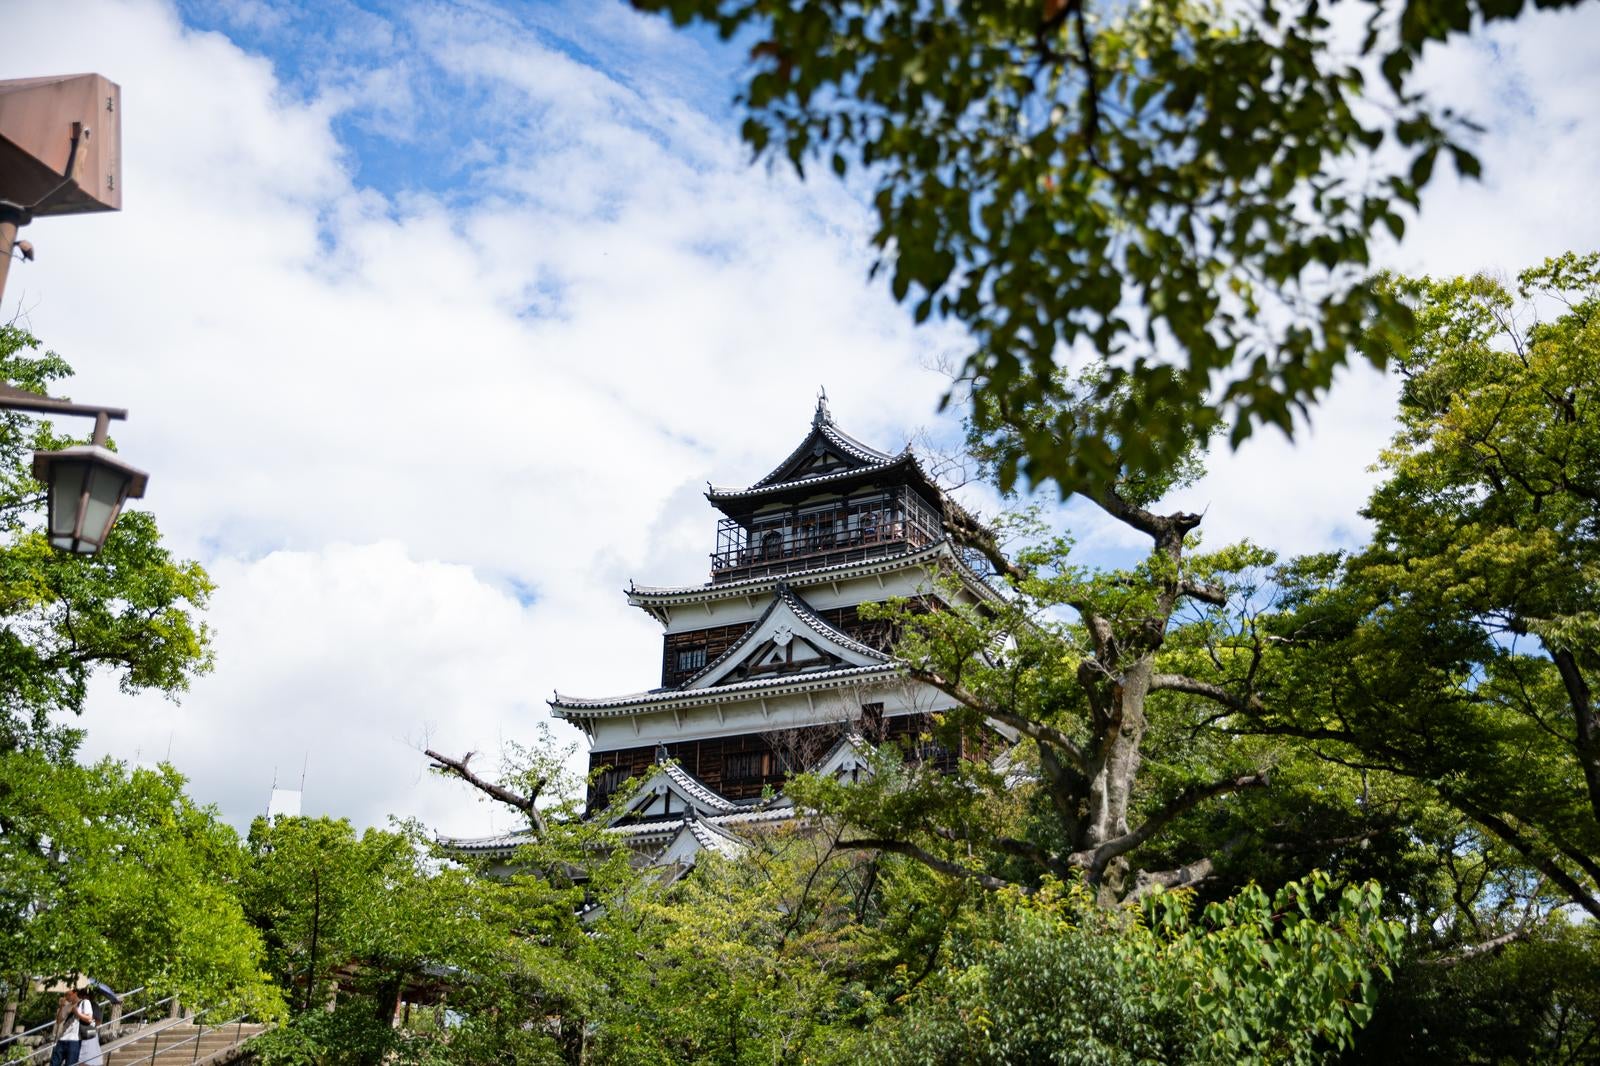 「復元された美 広島城」の写真